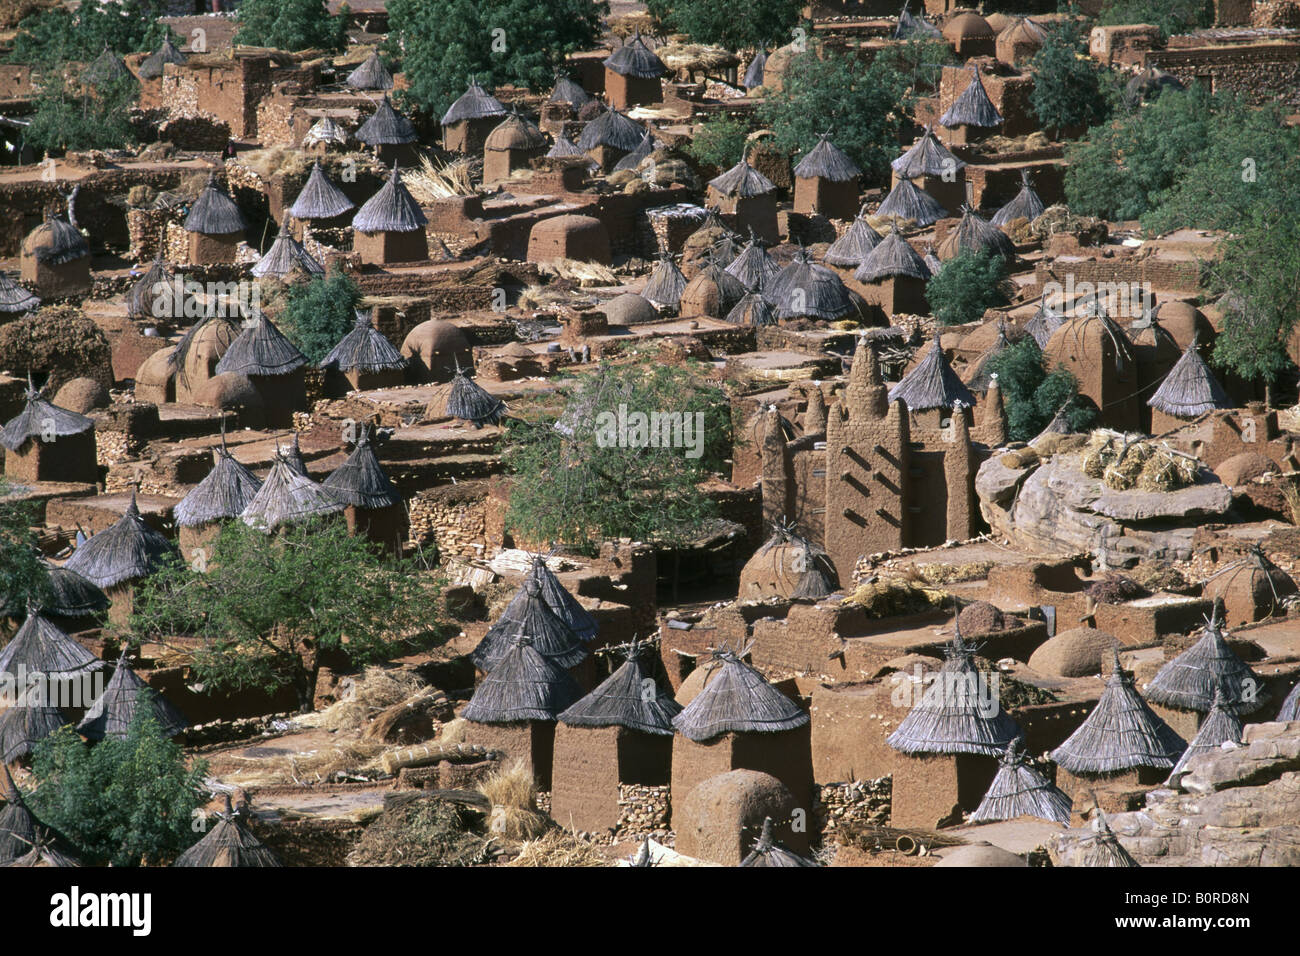 Clay huts, Songo, Dogonland, Mali Stock Photo